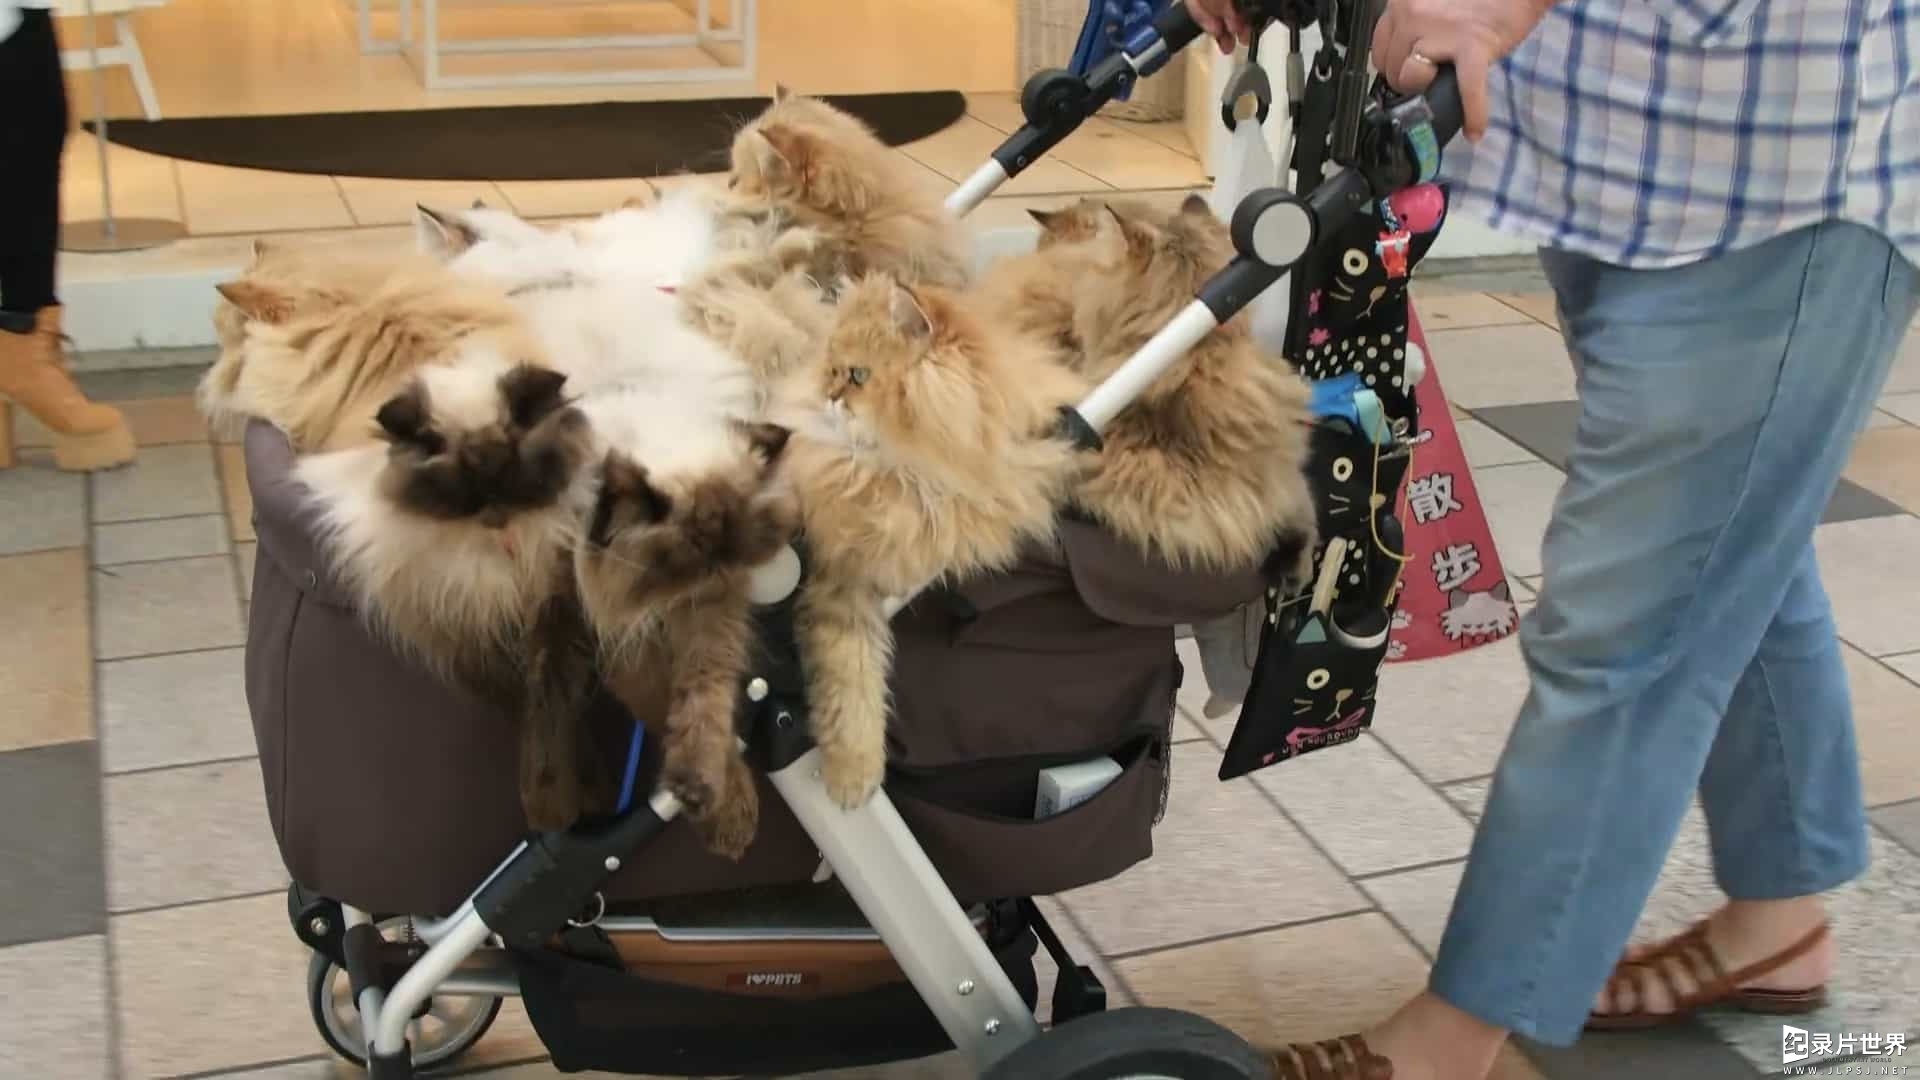 日本猫文化纪录片/萌宠系列《猫咪国度 Cat Nation: A Film About Japan’s Crazy Cat Culture 2017》